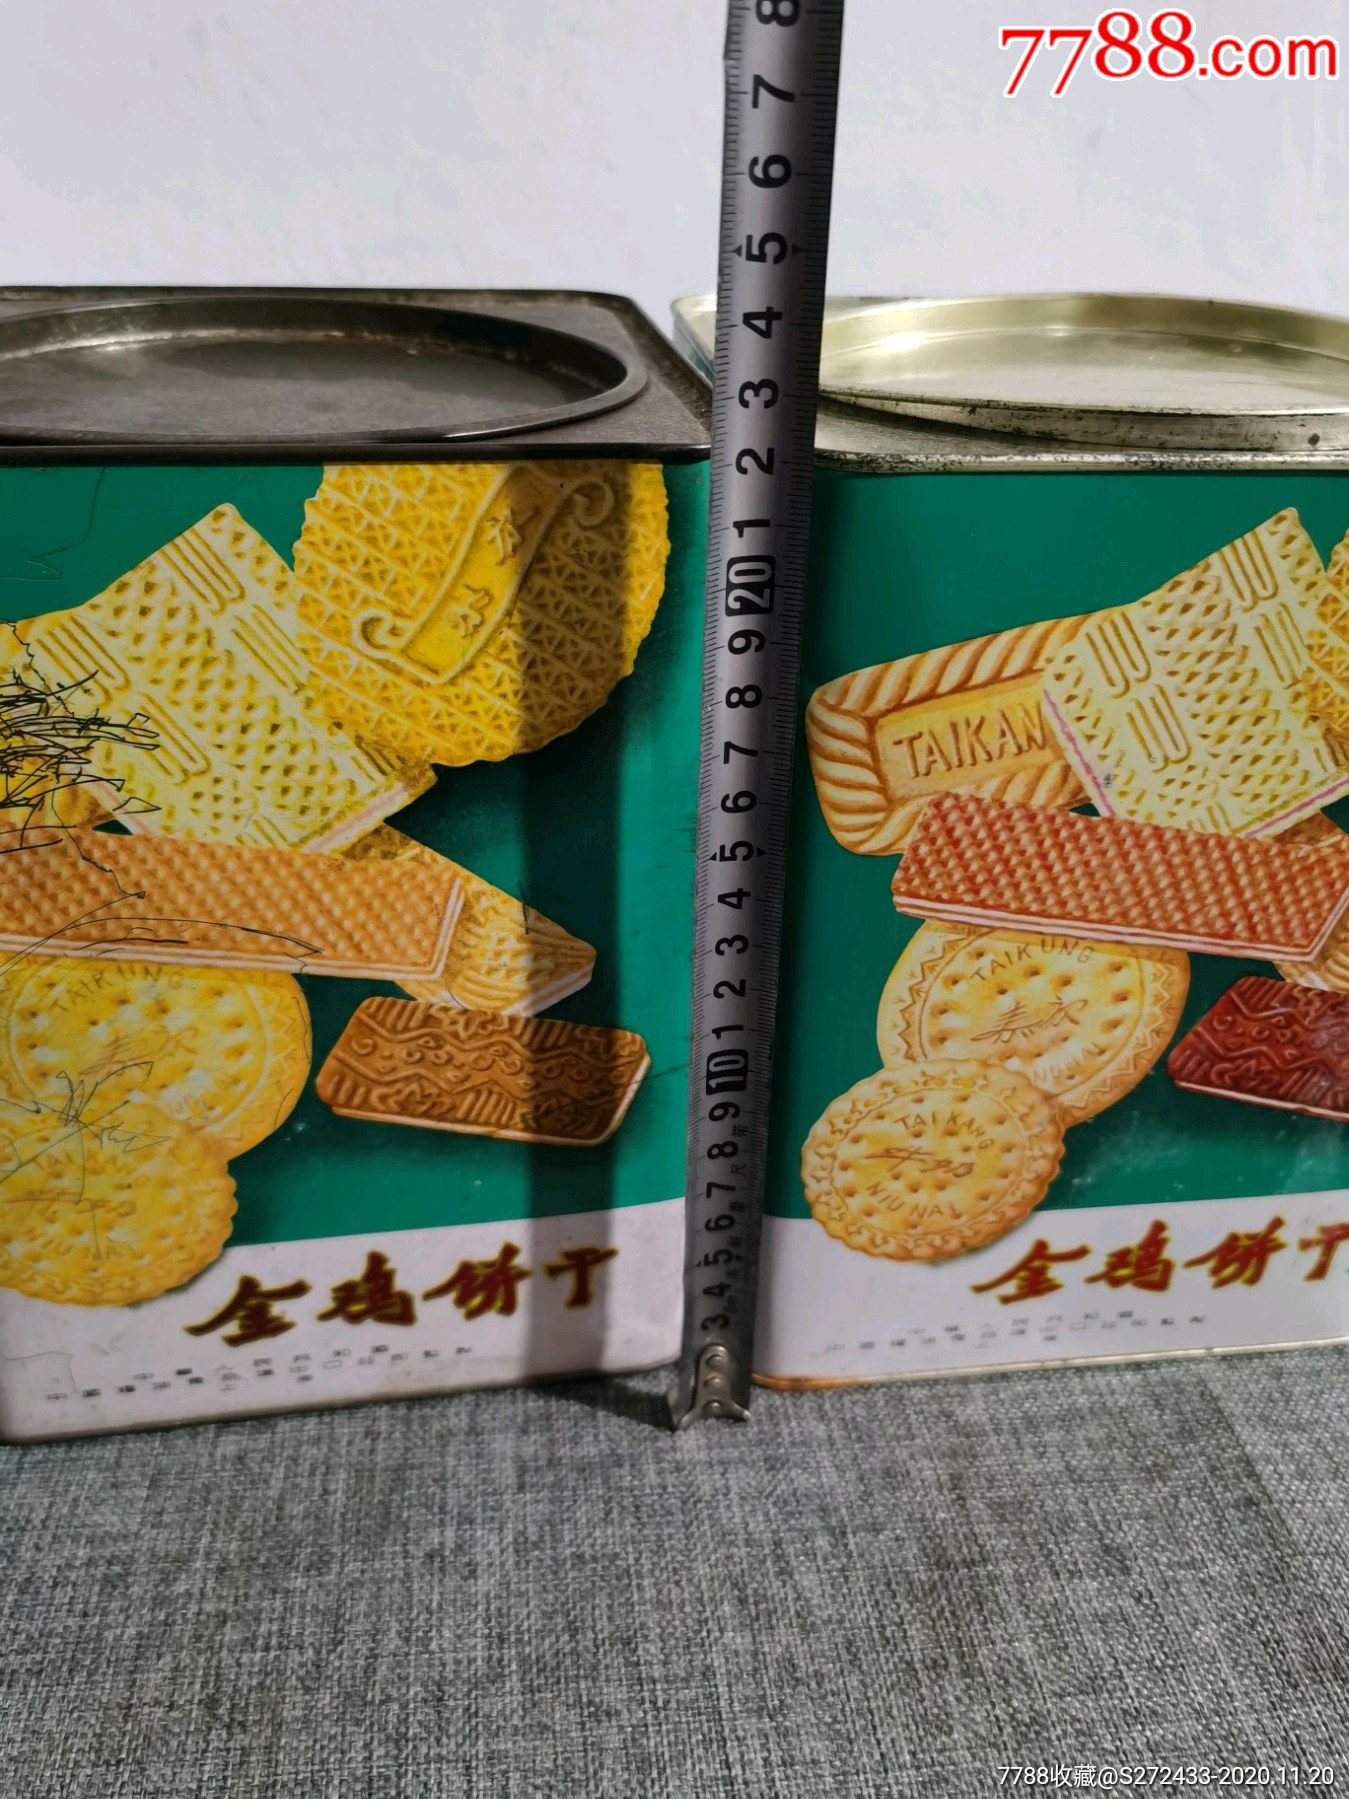 中华人民共和国,上海粮油食品厂出口型《金鸡牌饼干》包老,纪念怀旧